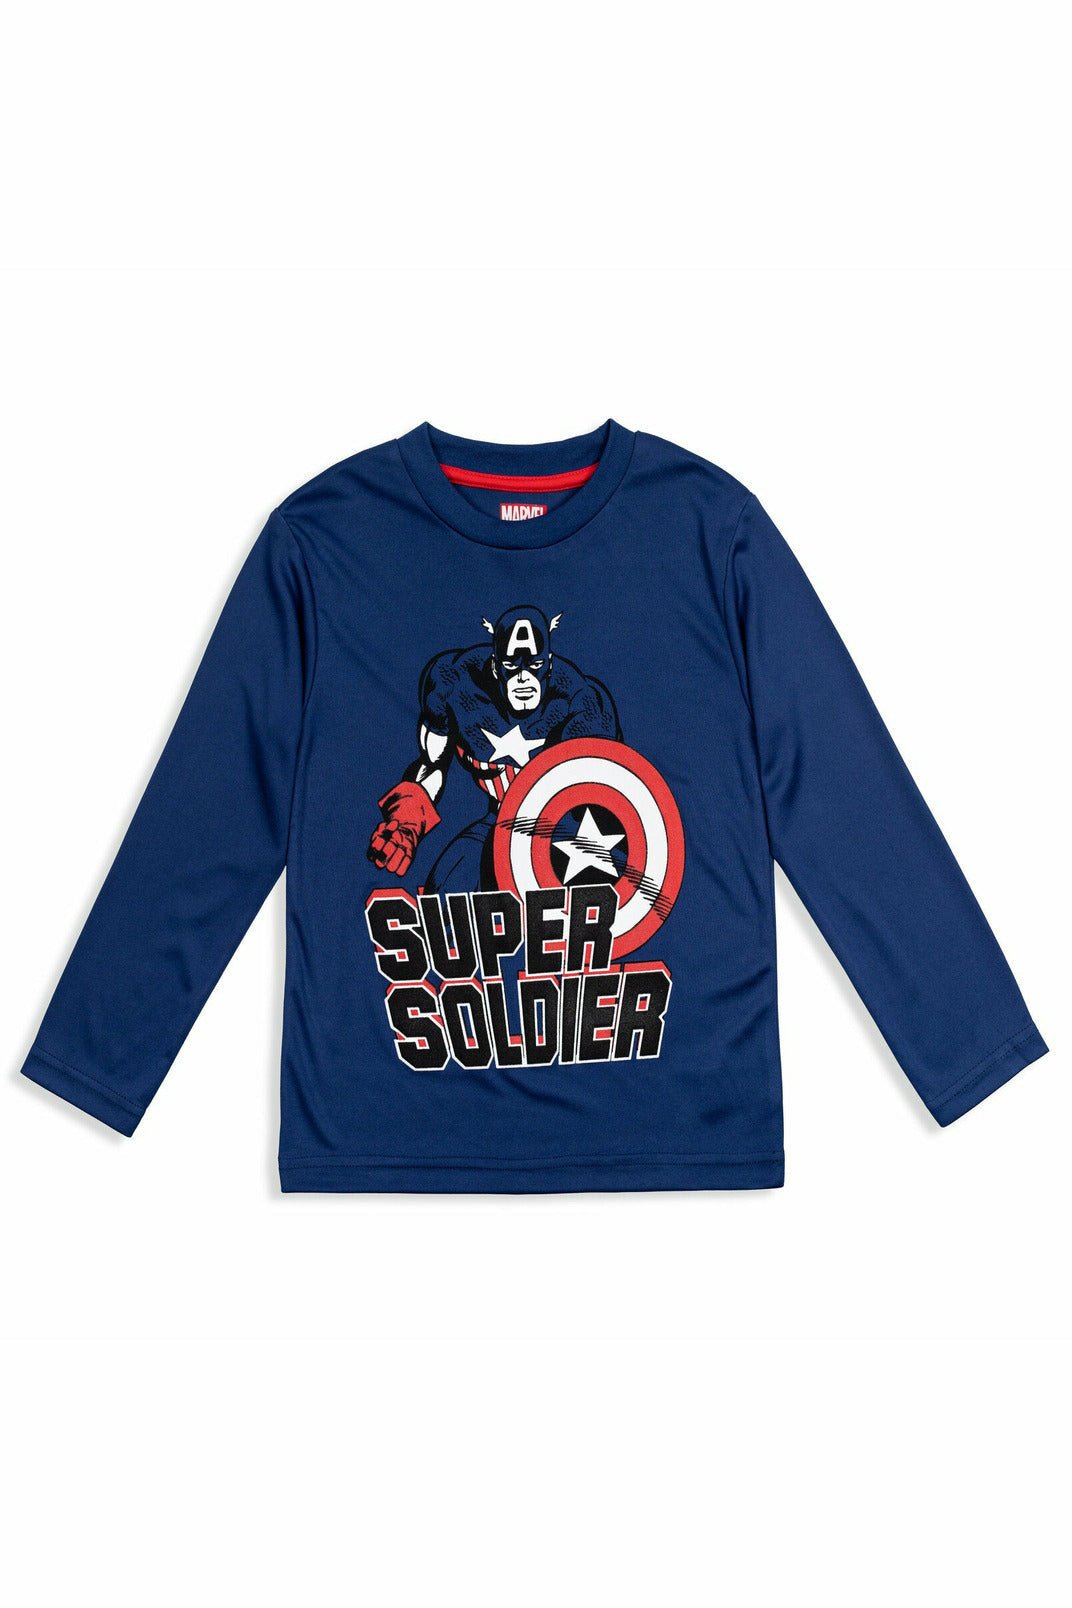 Marvel Avengers Captain America 4 Pack Raglan Long Sleeve Graphic T-Shirt - imagikids